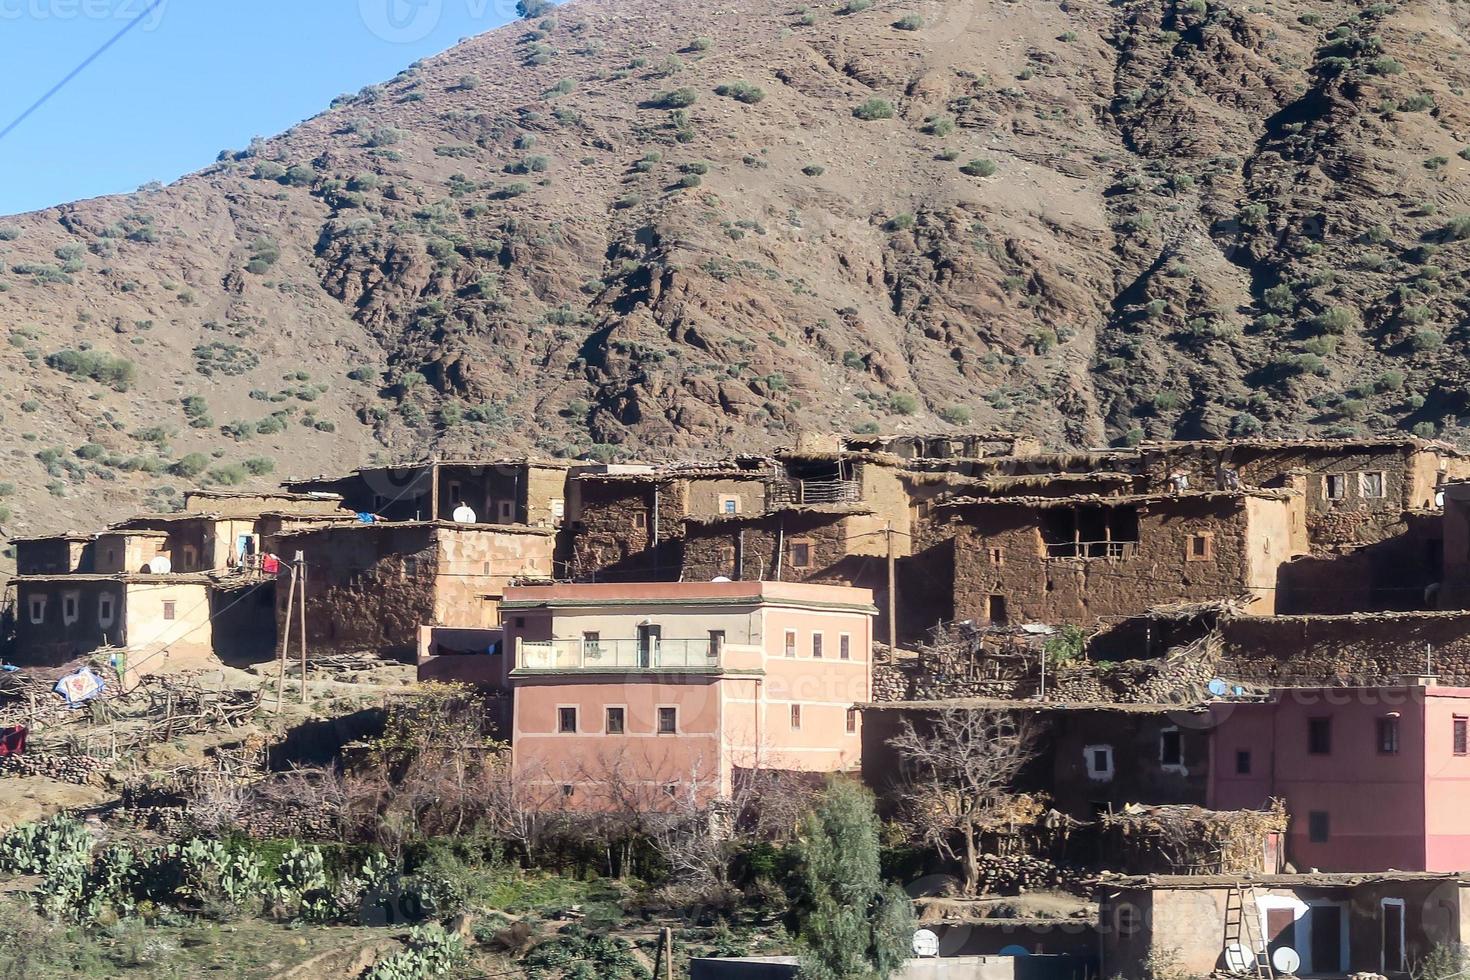 dorp in Marokko foto